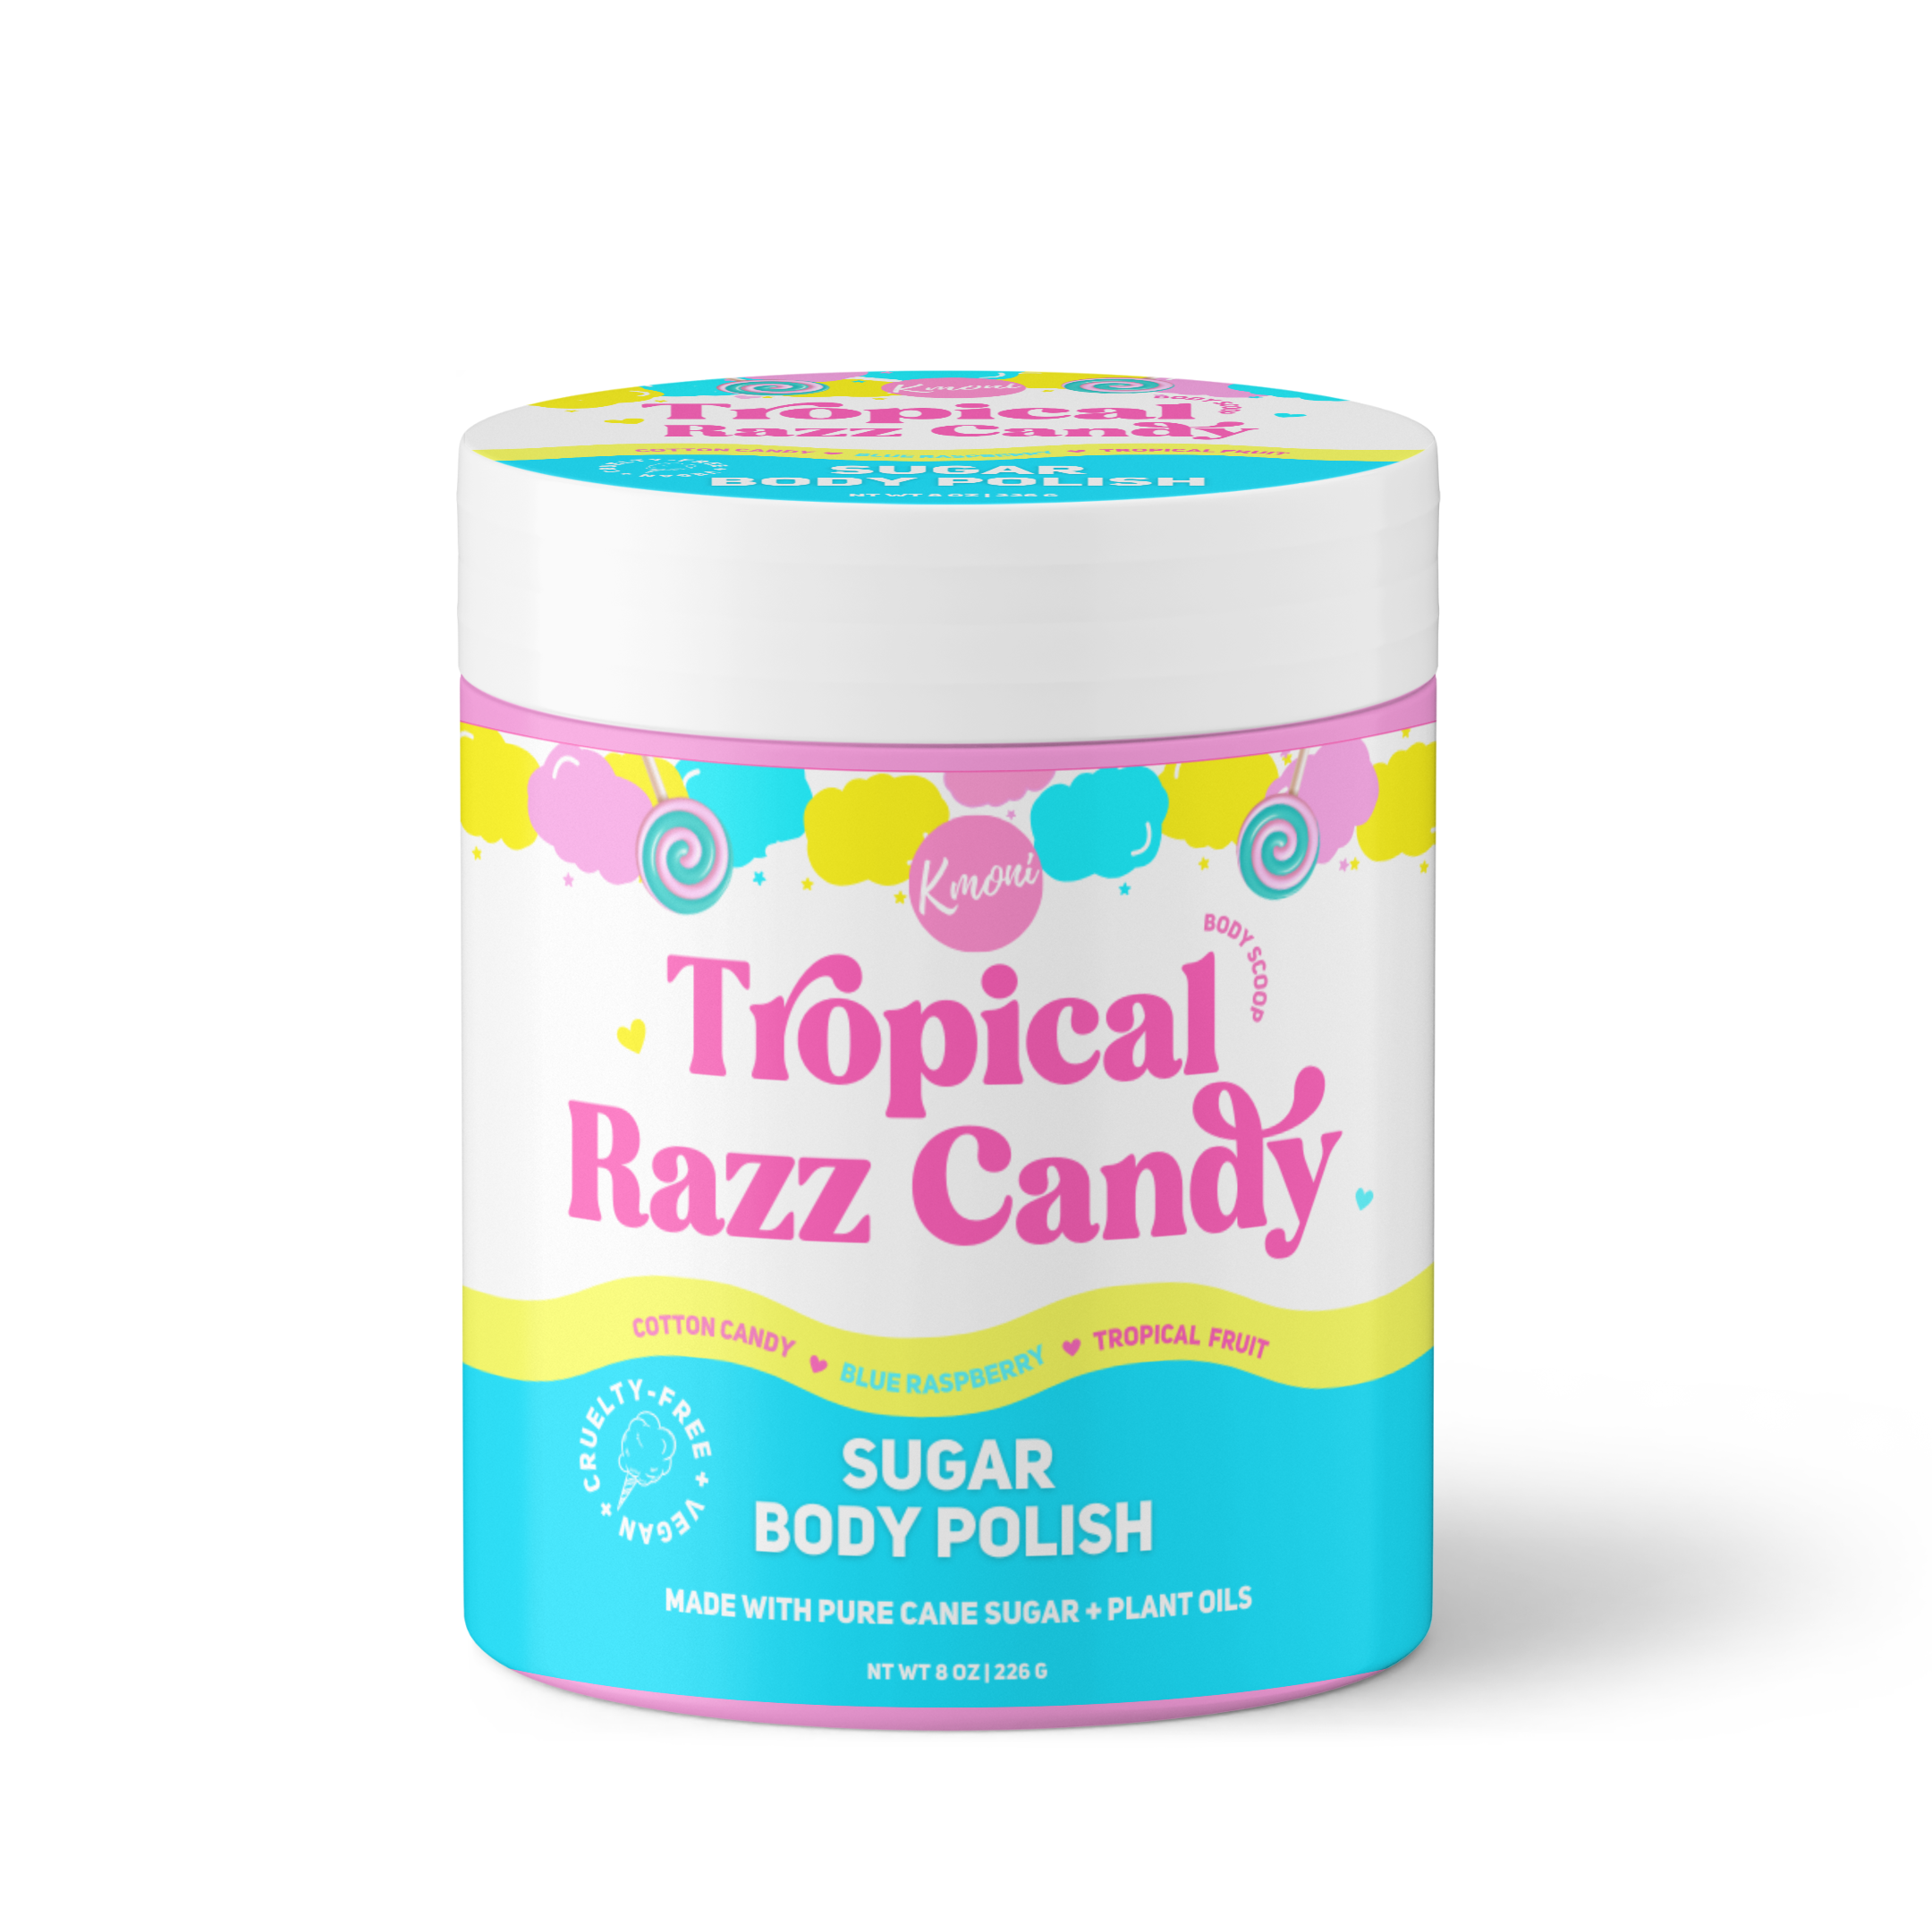 Tropical Razz Candy Sugar Body Polish